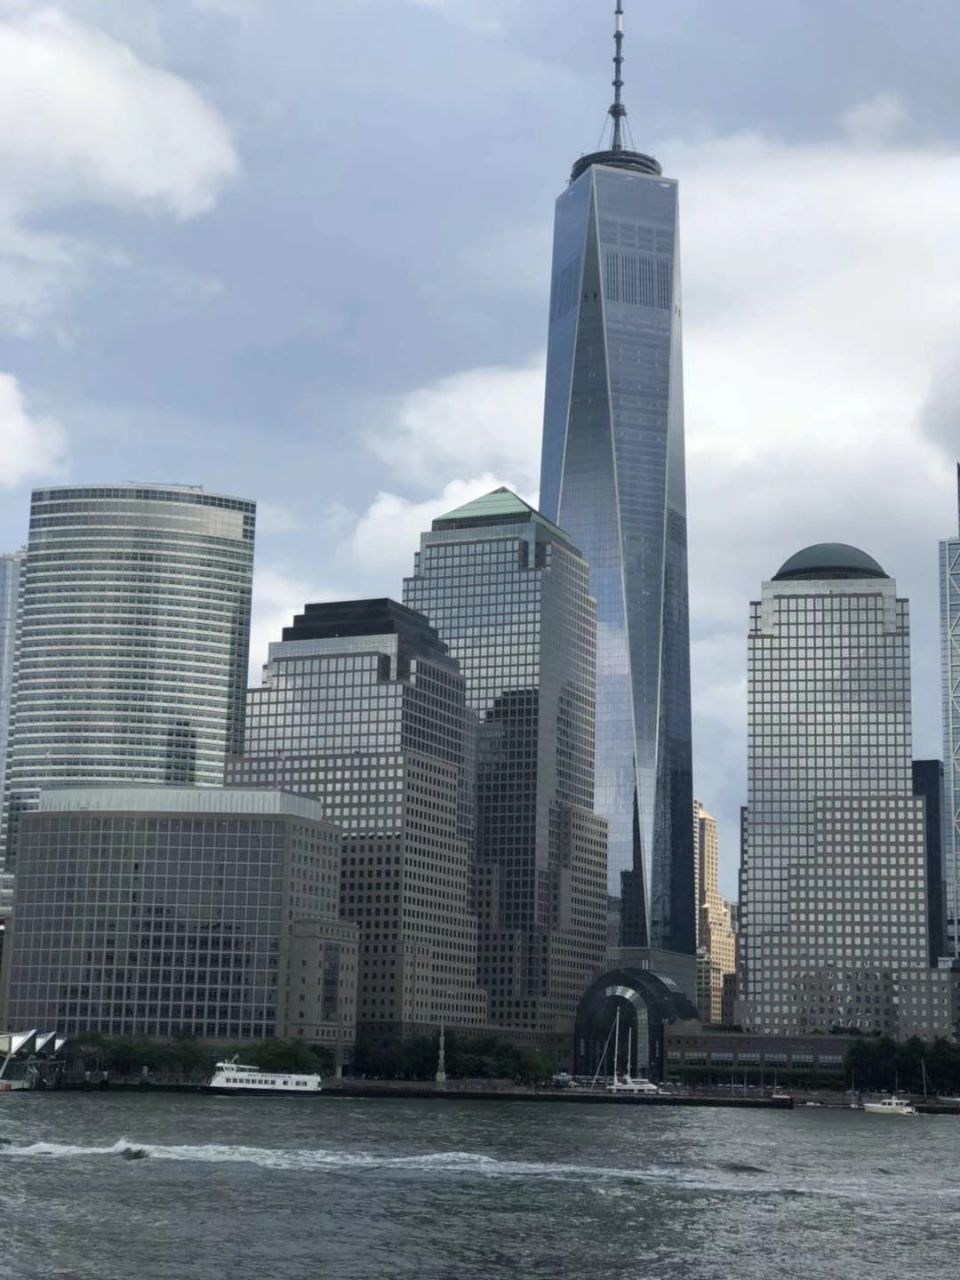 着游船参观的曼哈顿岛的世界金融中心,有点类似于陆家嘴,高楼大厦林立